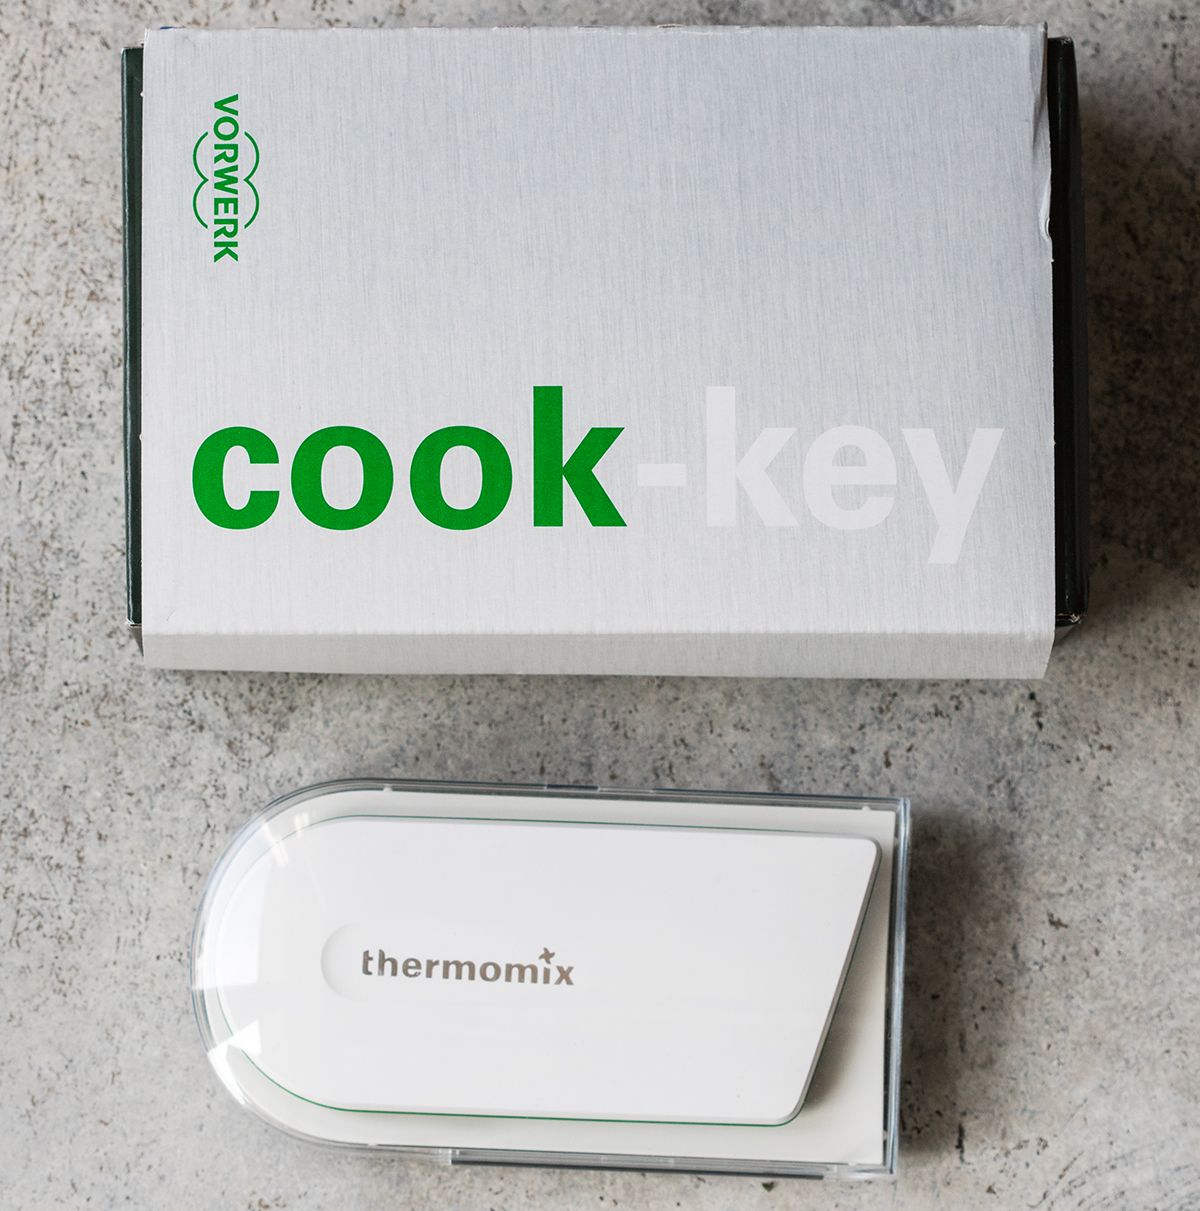 Promoción lanzamiento Thermomix® Tm 5 con cook-key y cook-key para clientes Thermomix® Tm5